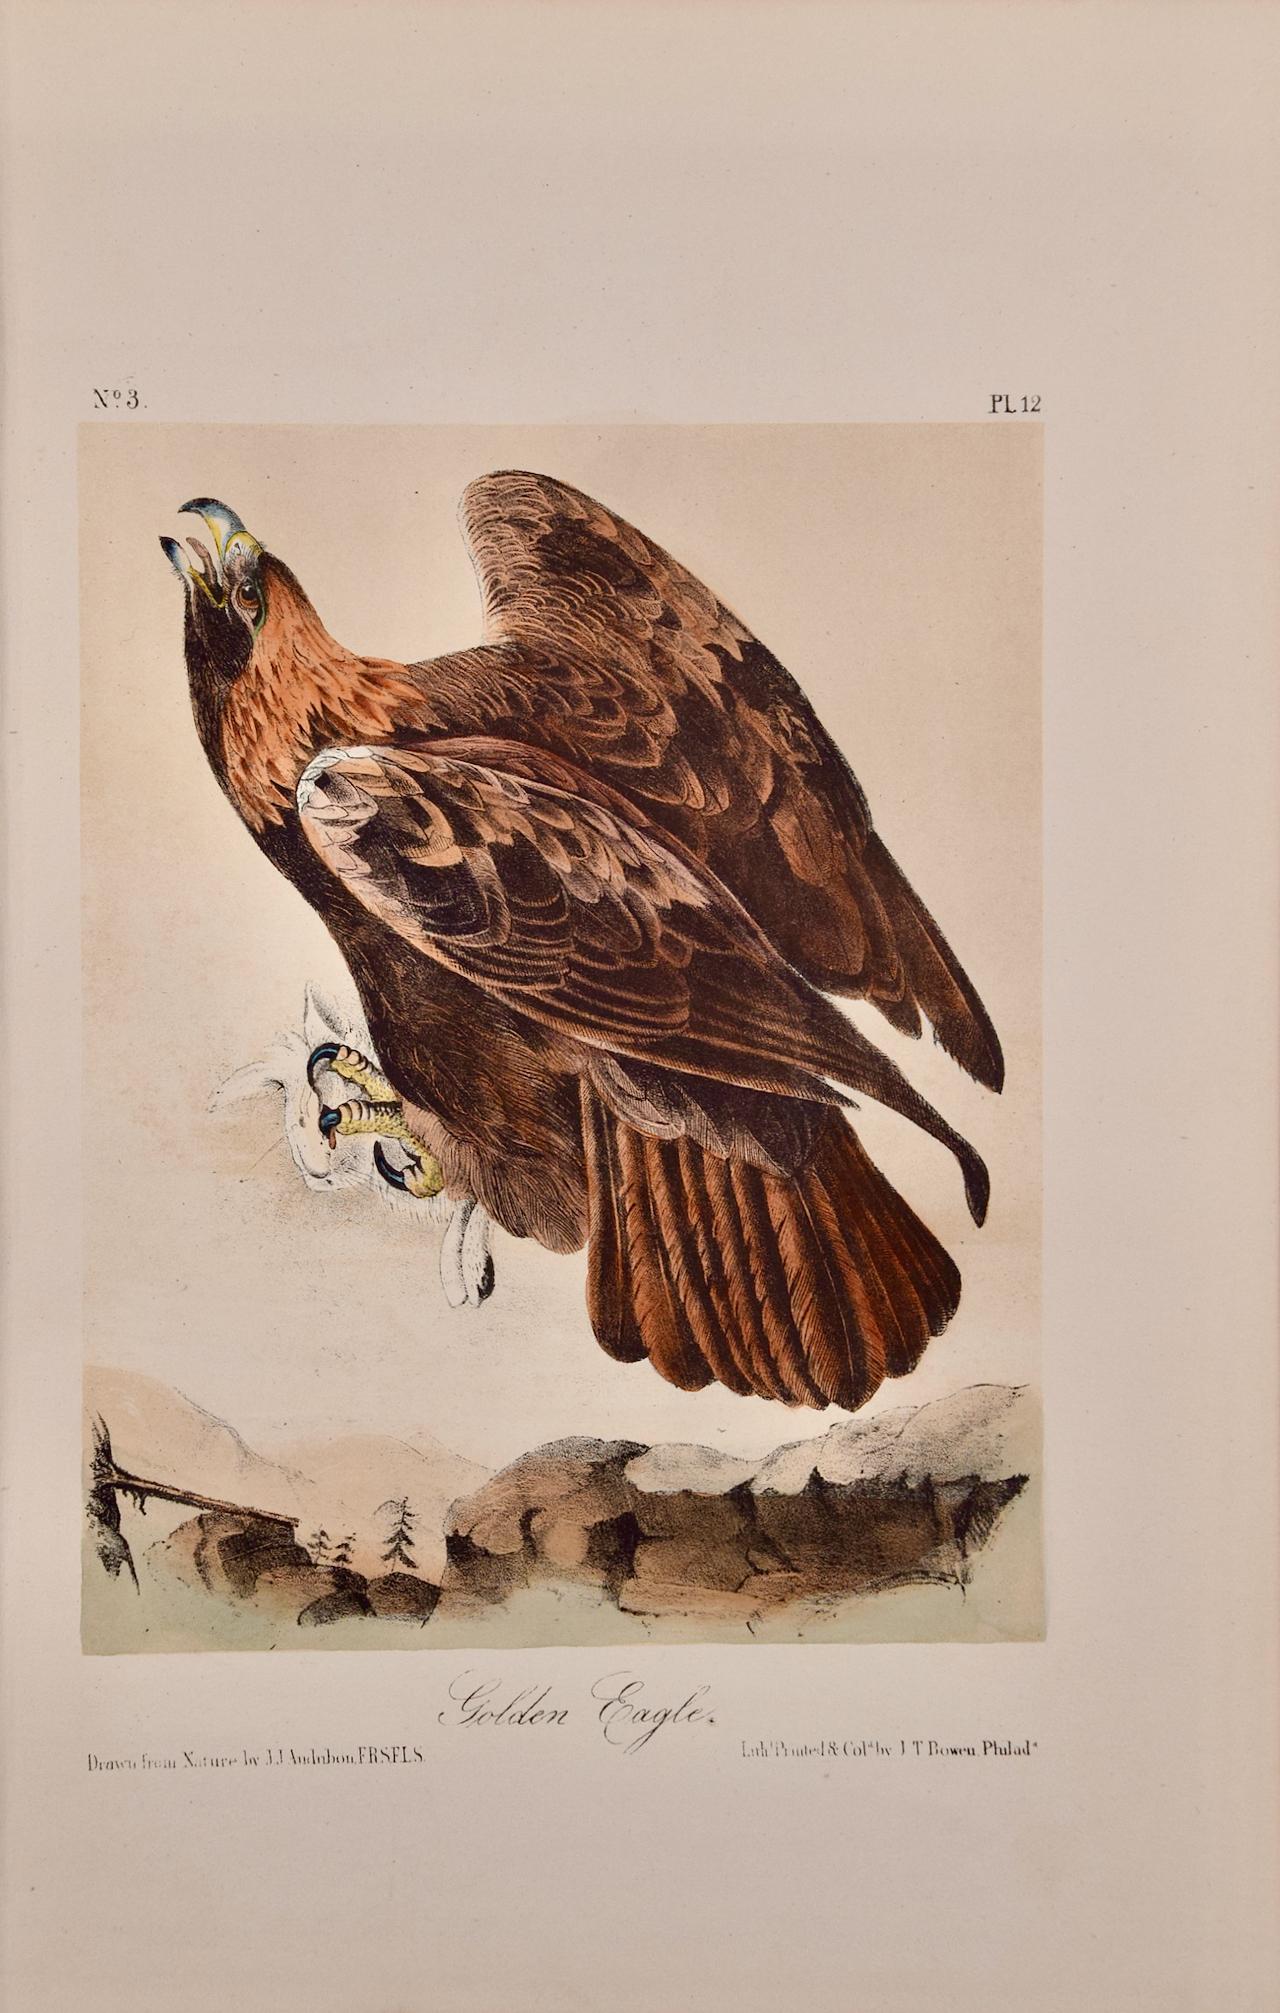 John James Audubon Landscape Print – Goldener Adler: Eine handkolorierte Vogellithographie von Audubon aus dem 19. Jahrhundert